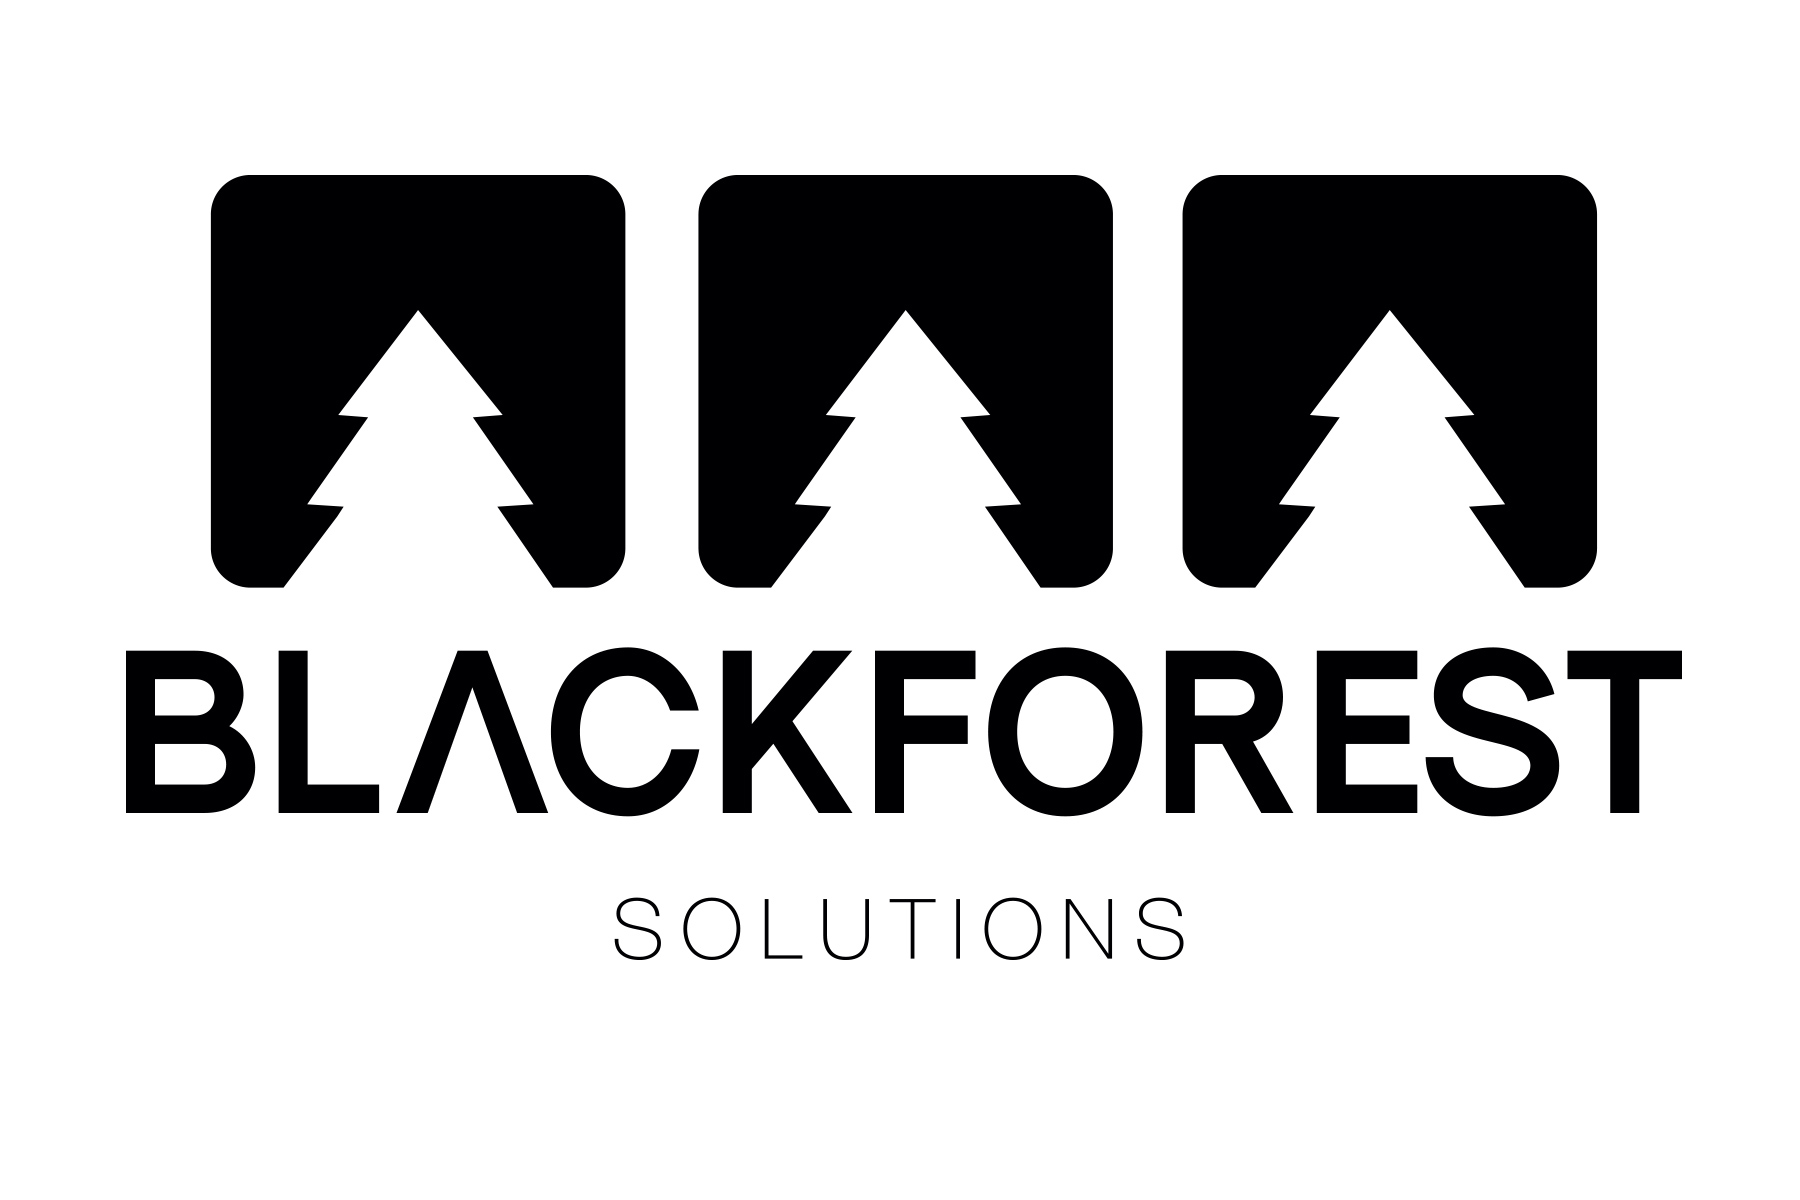 (c) Blackforest-solutions.com